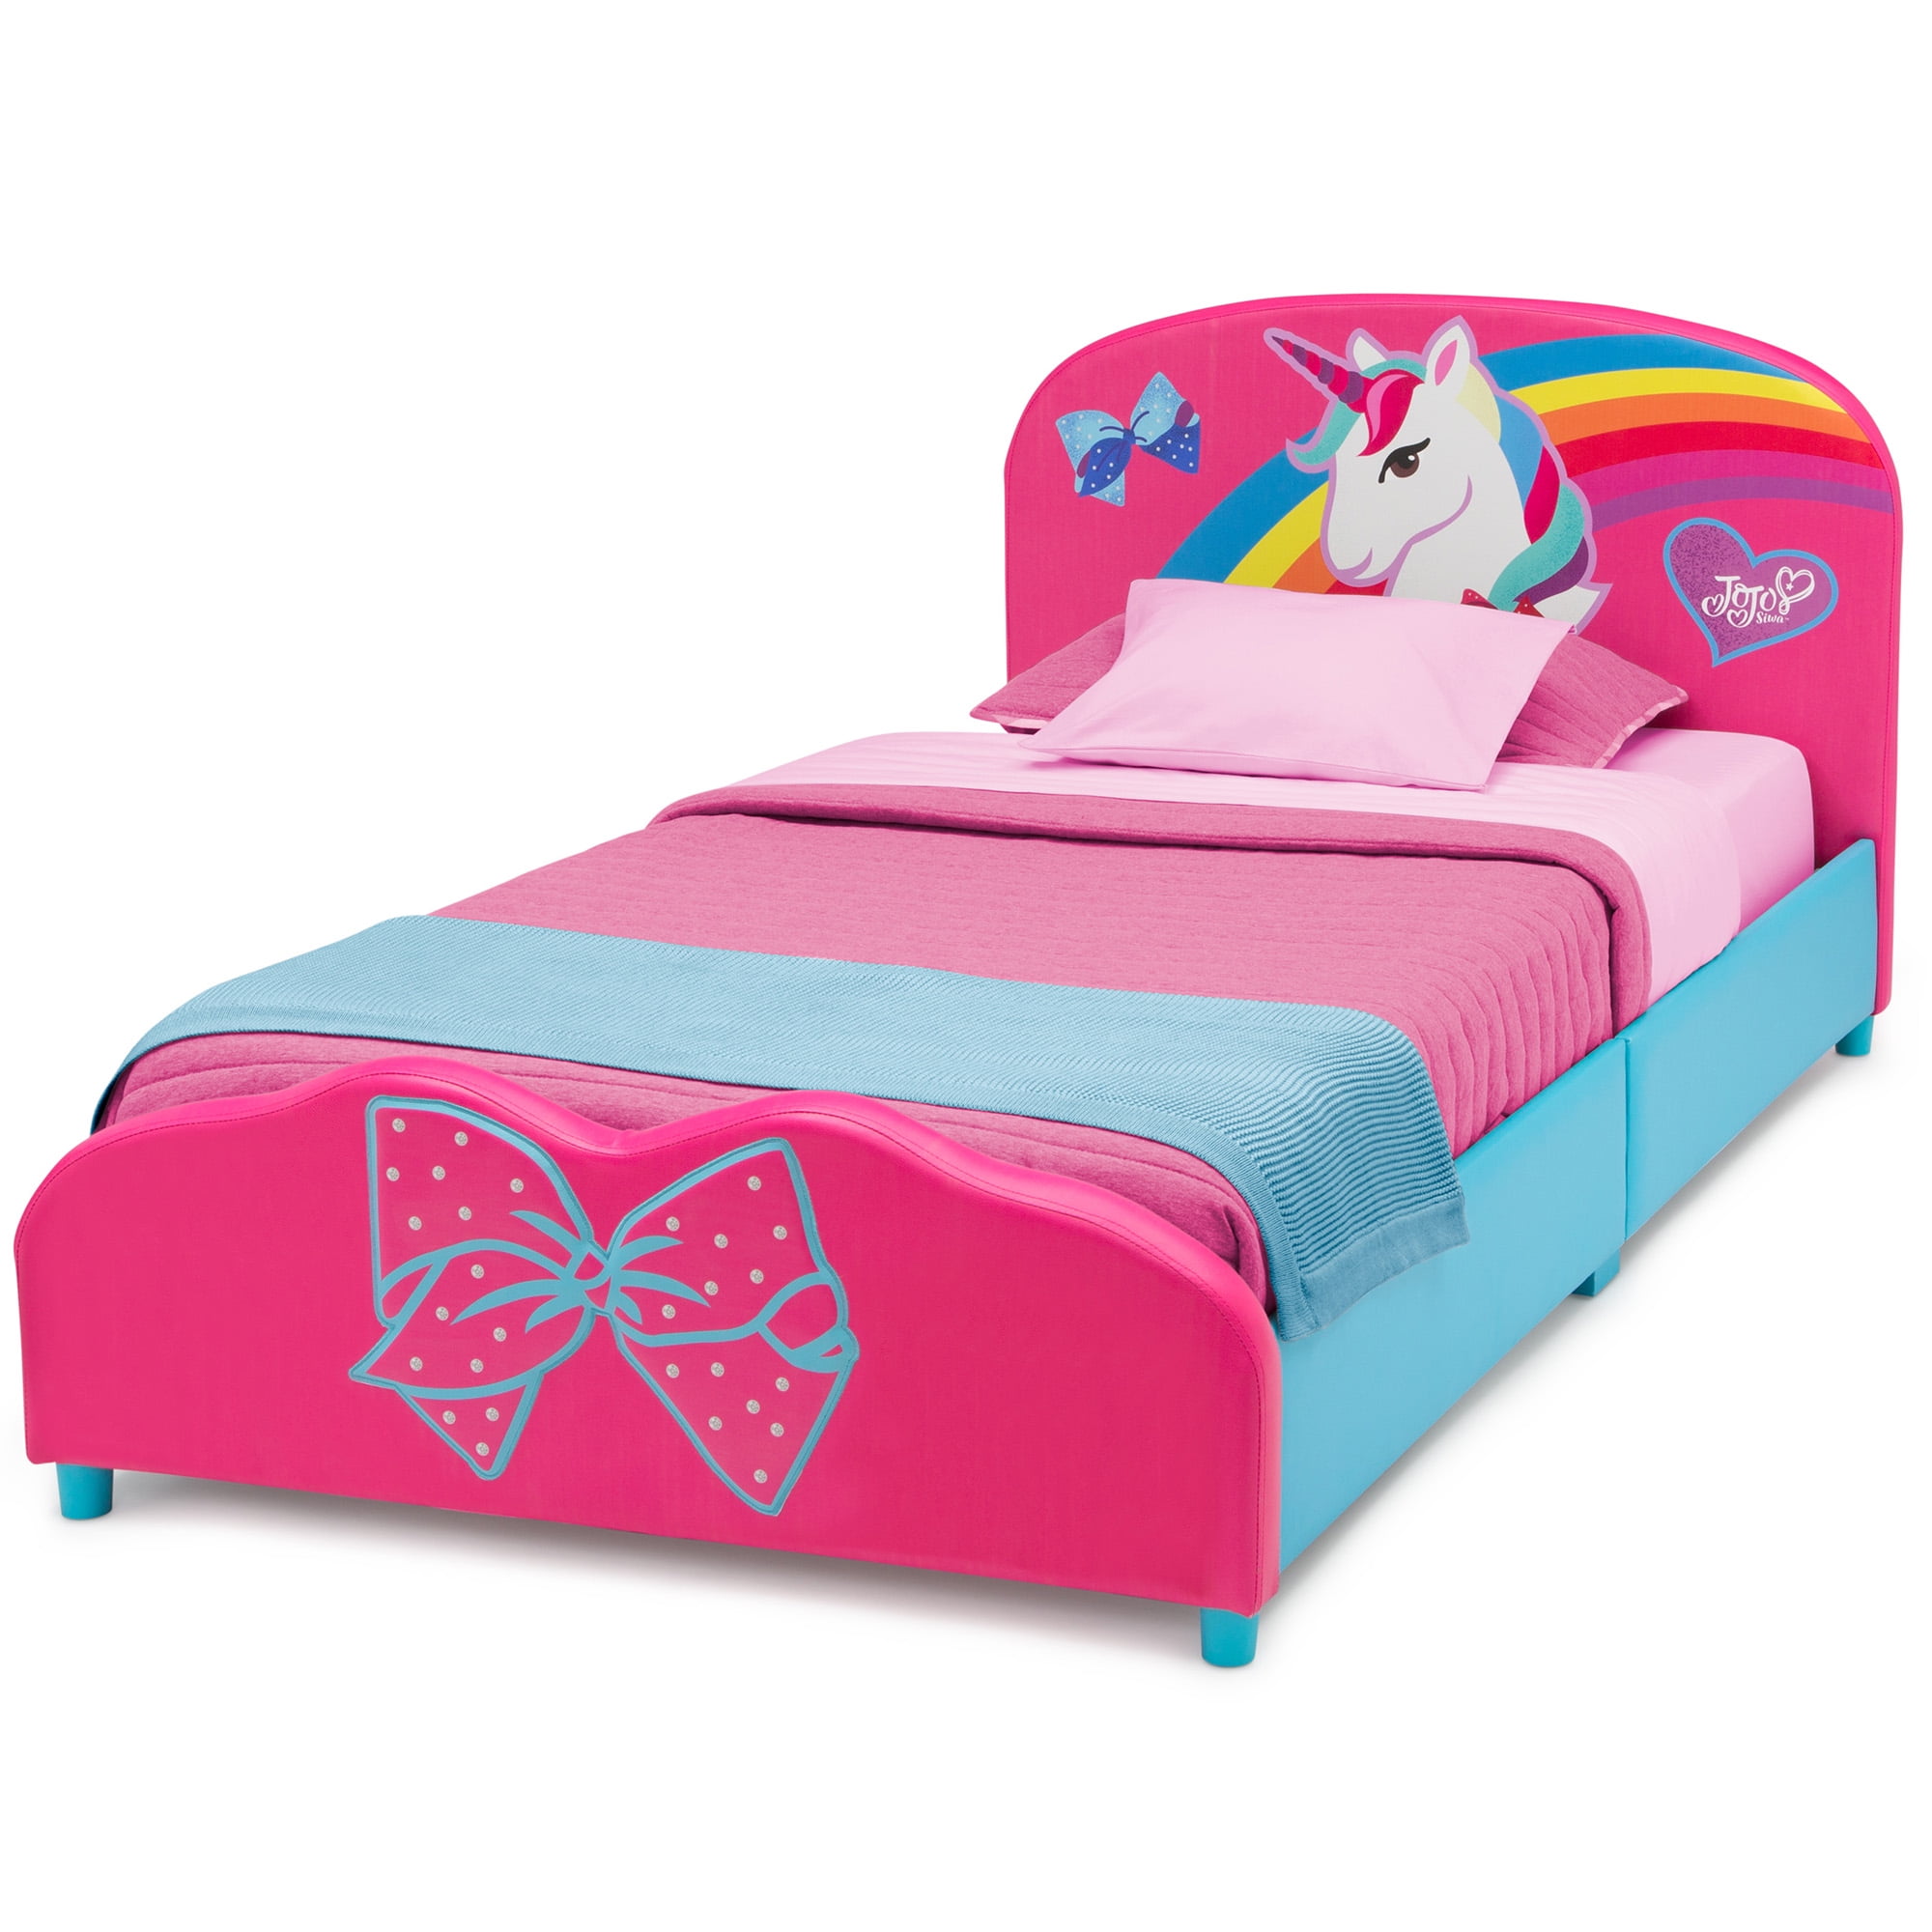 Кровать Единорог для девочки. Кровать с единорогом детская. Розовая кровать. Кровать детская розовая с единорогом. Кровать единорог